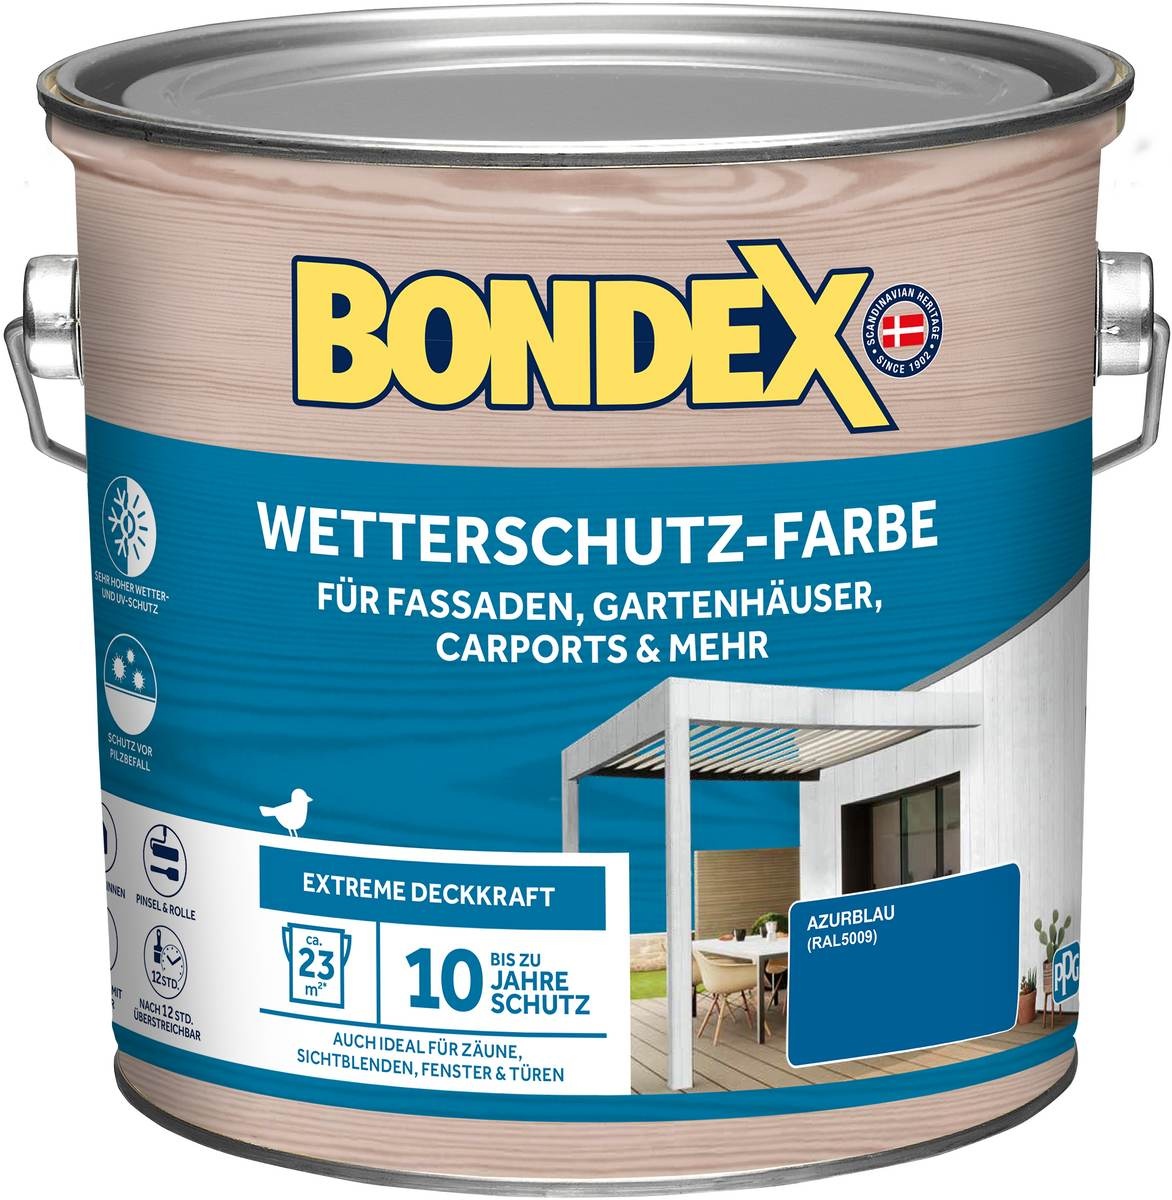 BONDEX Wetterschutz-Farbe, witterungsbeständig, hohe Deckkraft, verschiedene Farben und Grössen